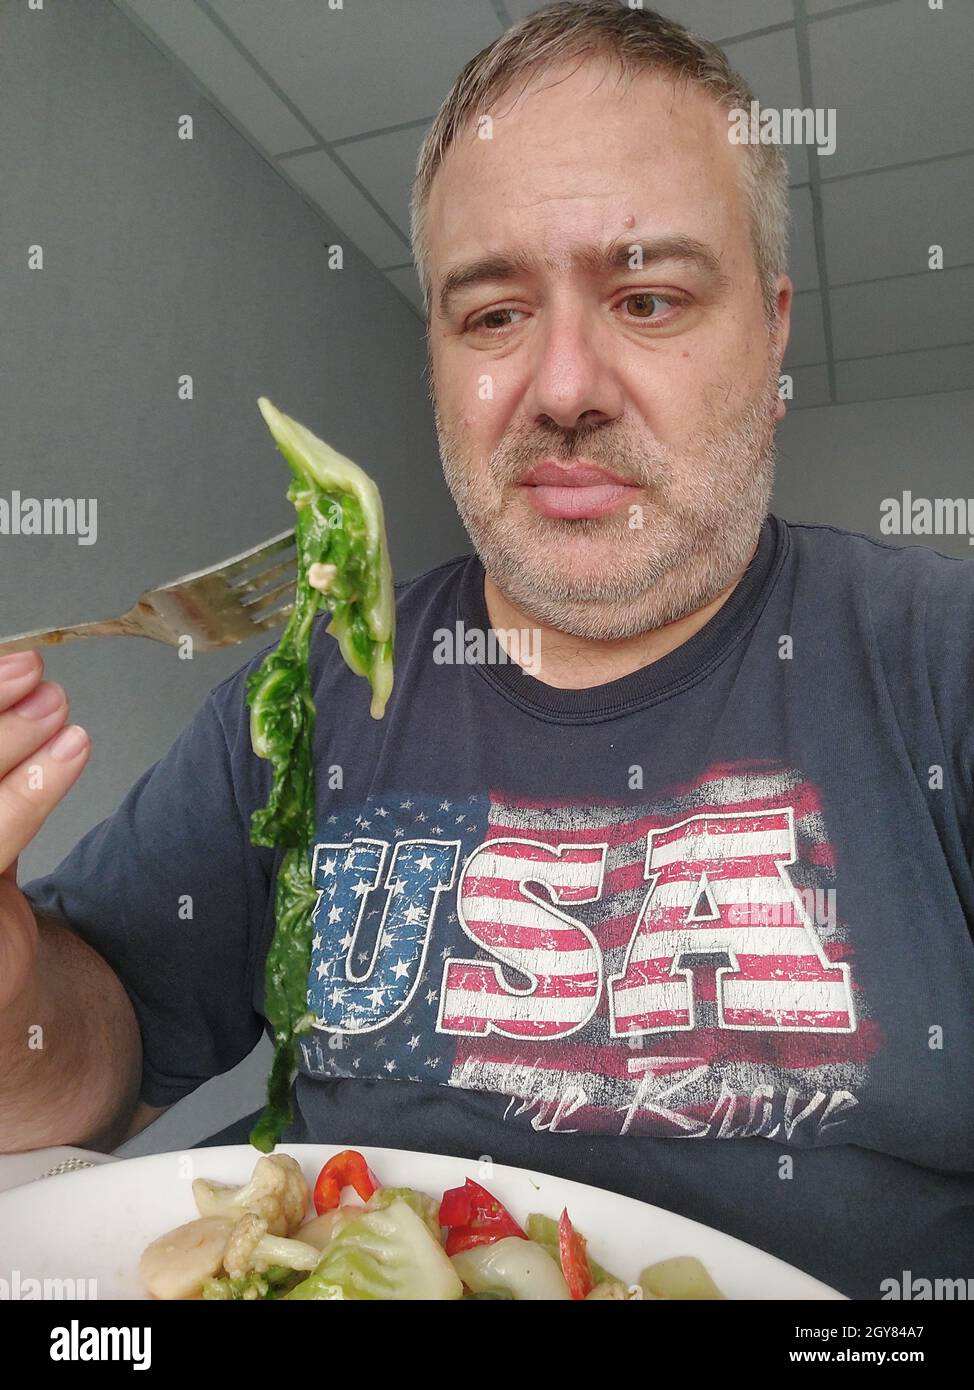 El hombre gordo disgustado por las verduras frondosas Foto de stock